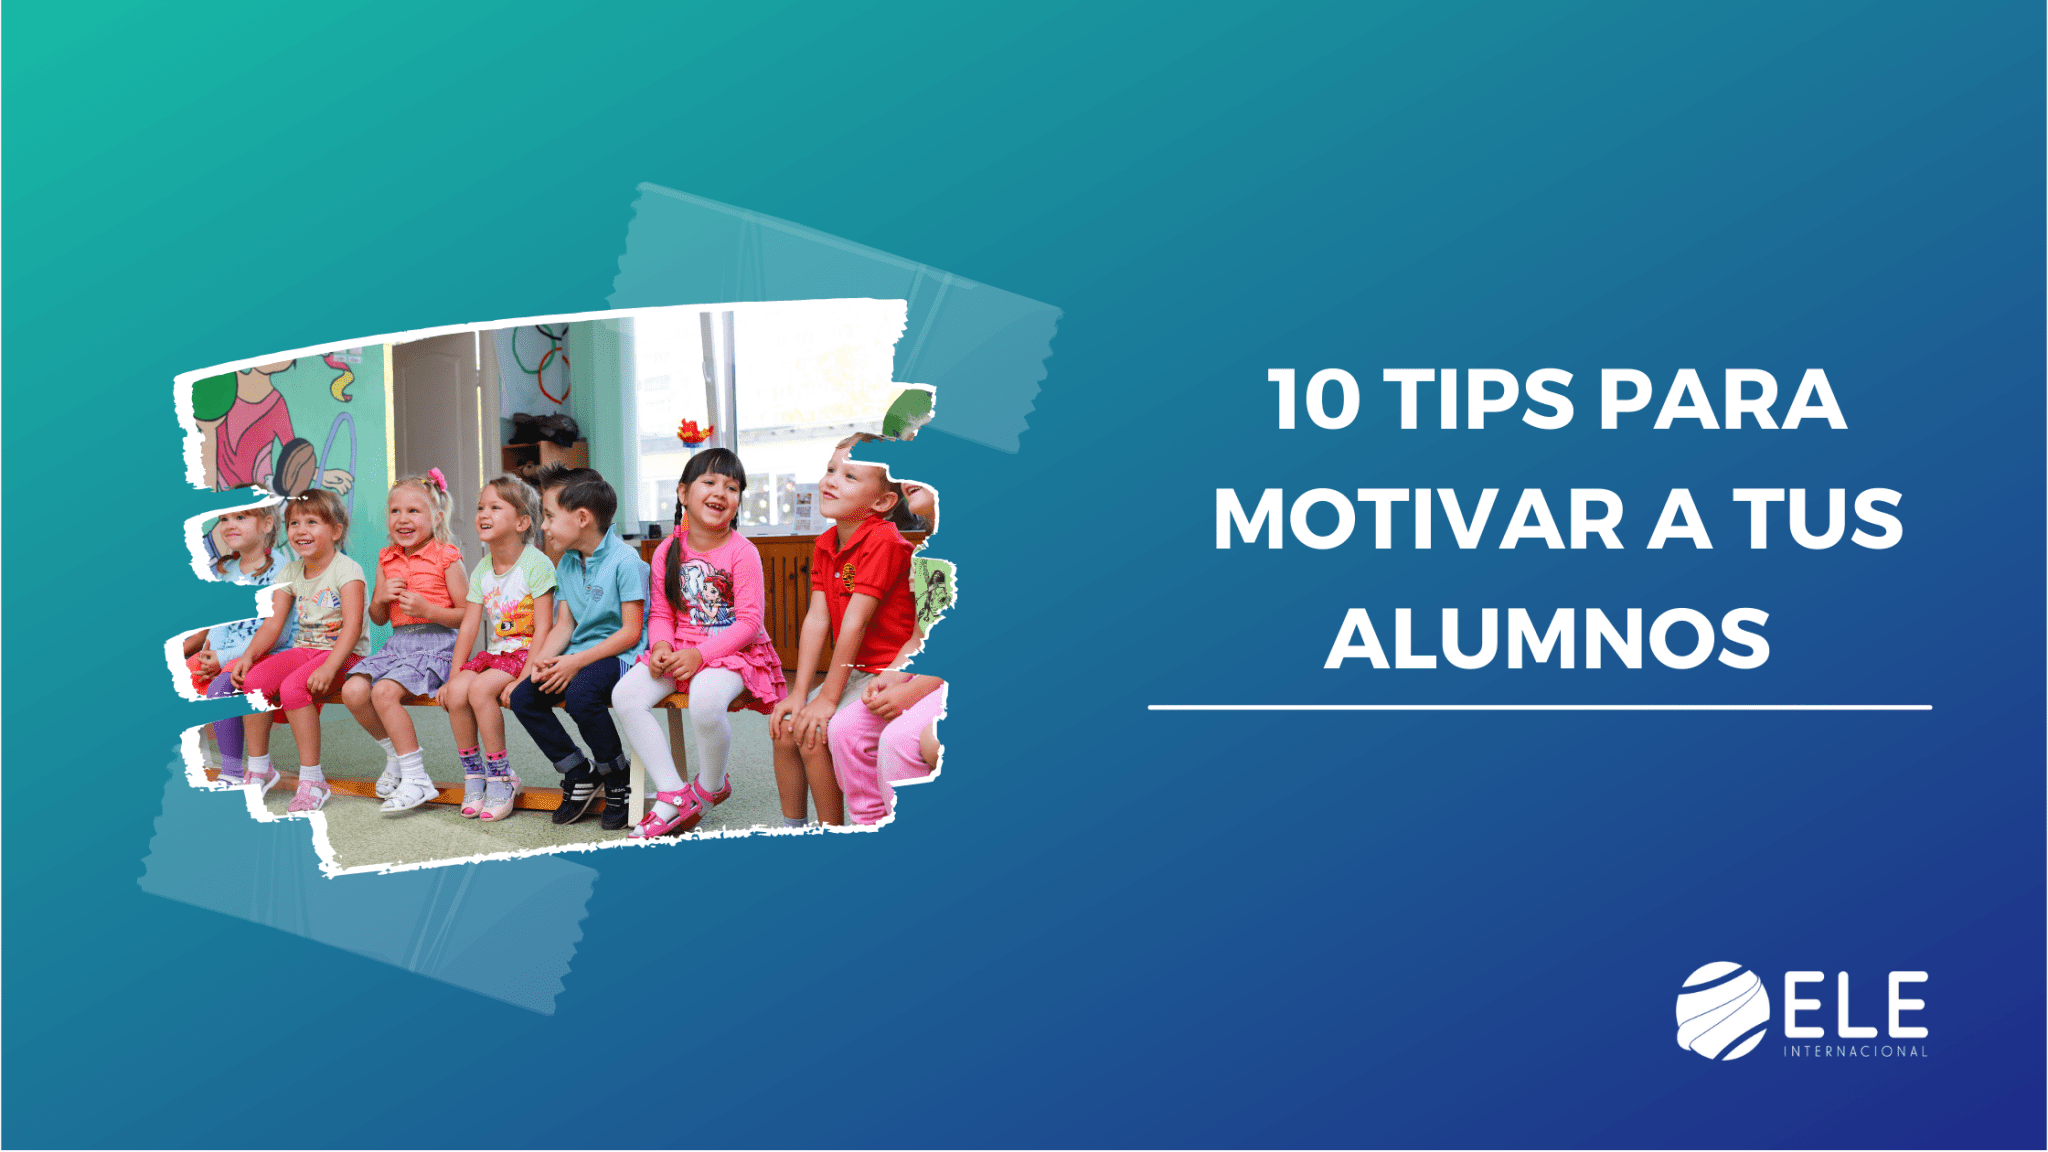 10 tips para motivar a tus alumnos